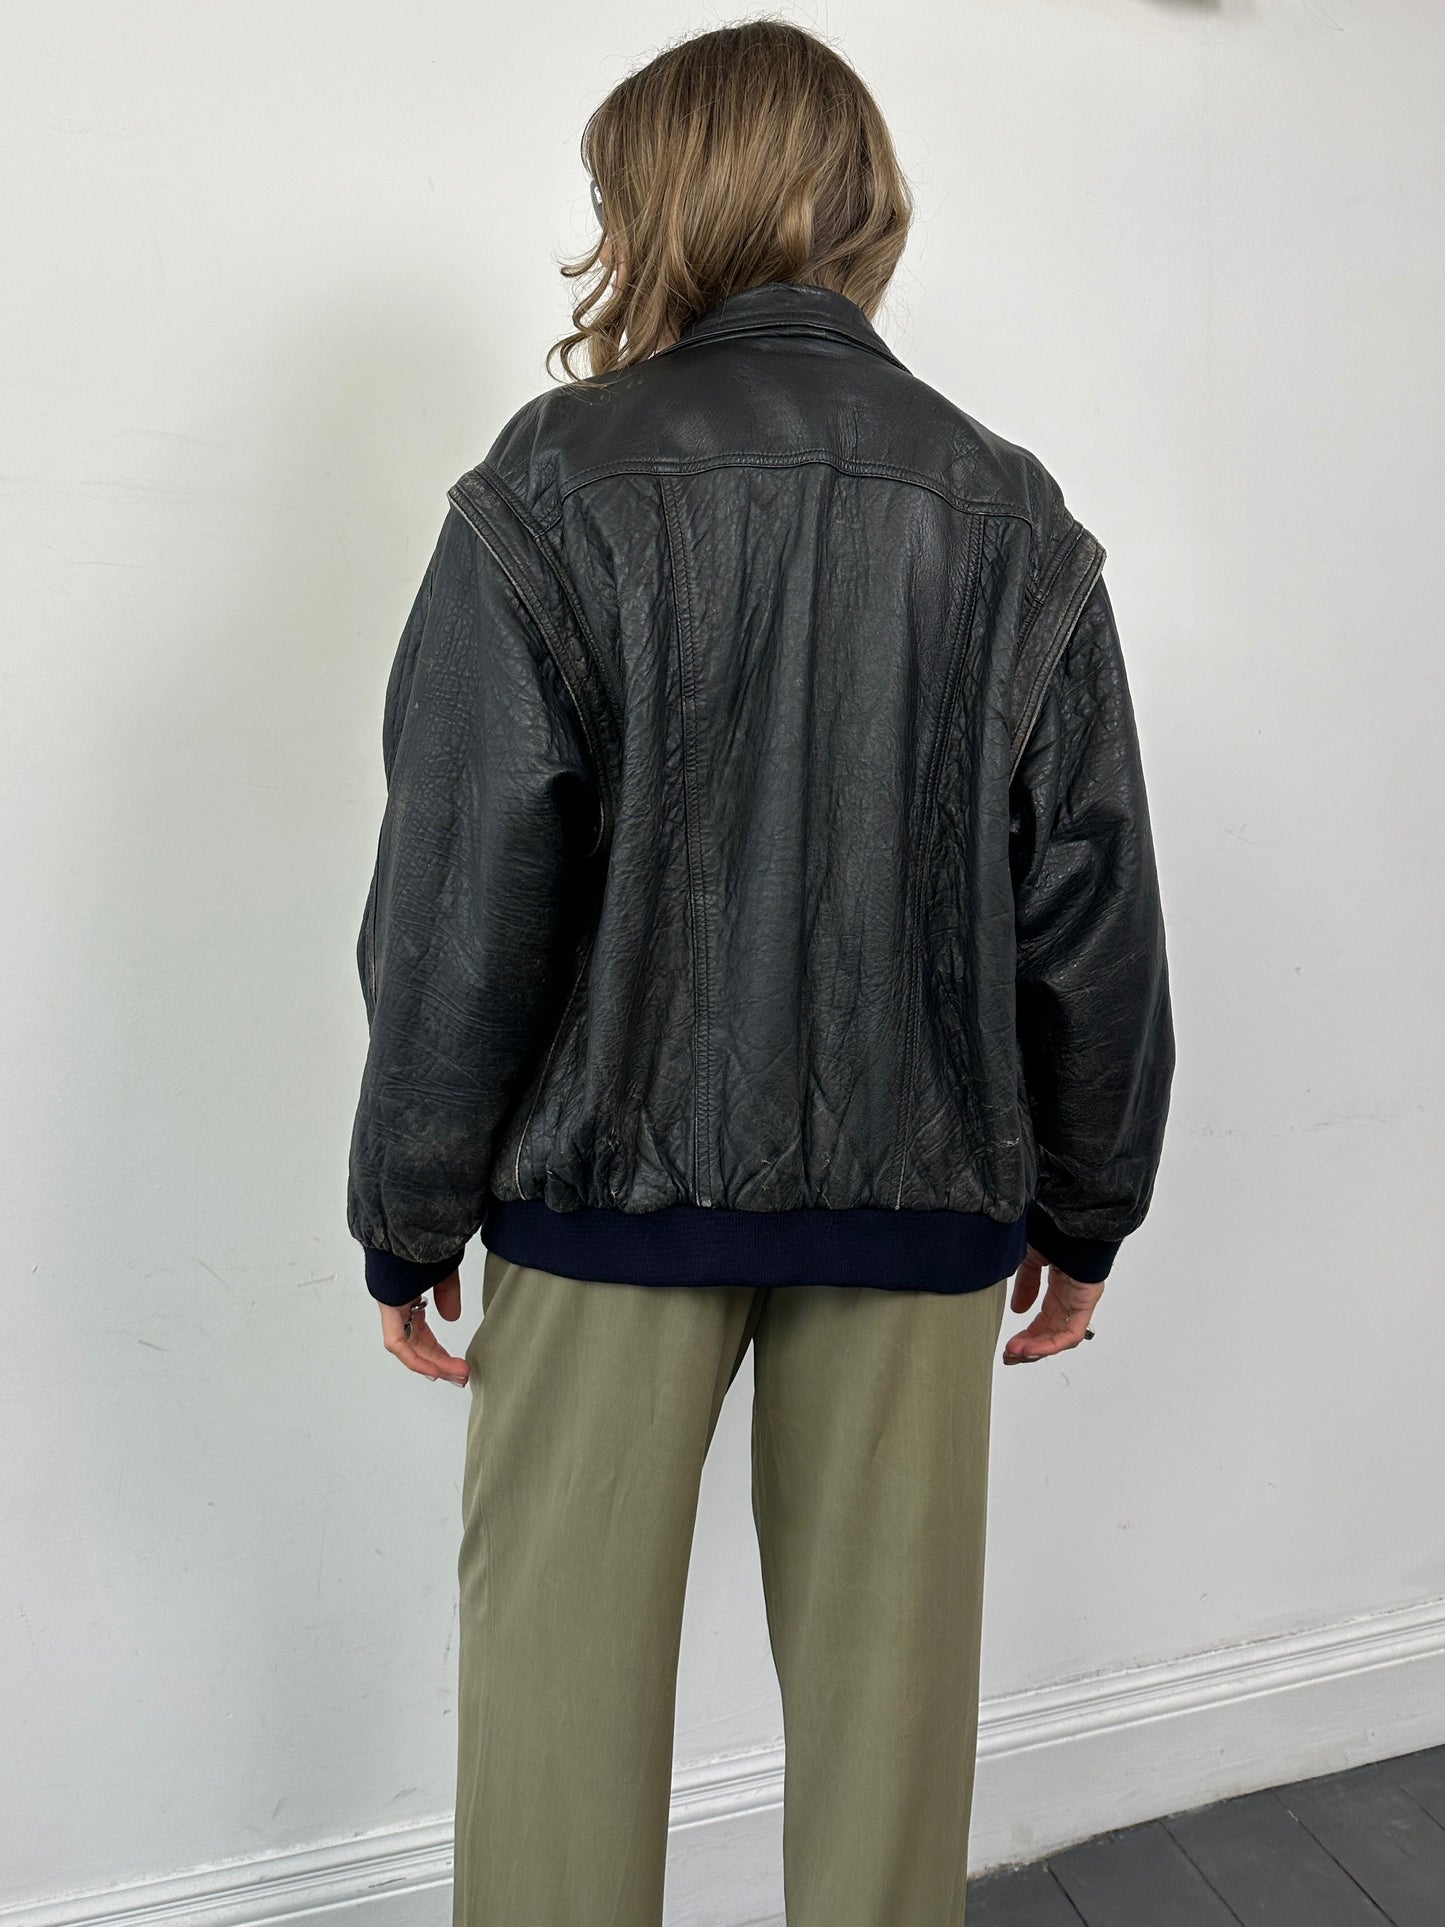 Vintage Distressed Leather Bomber Gilet Jacket - M/L